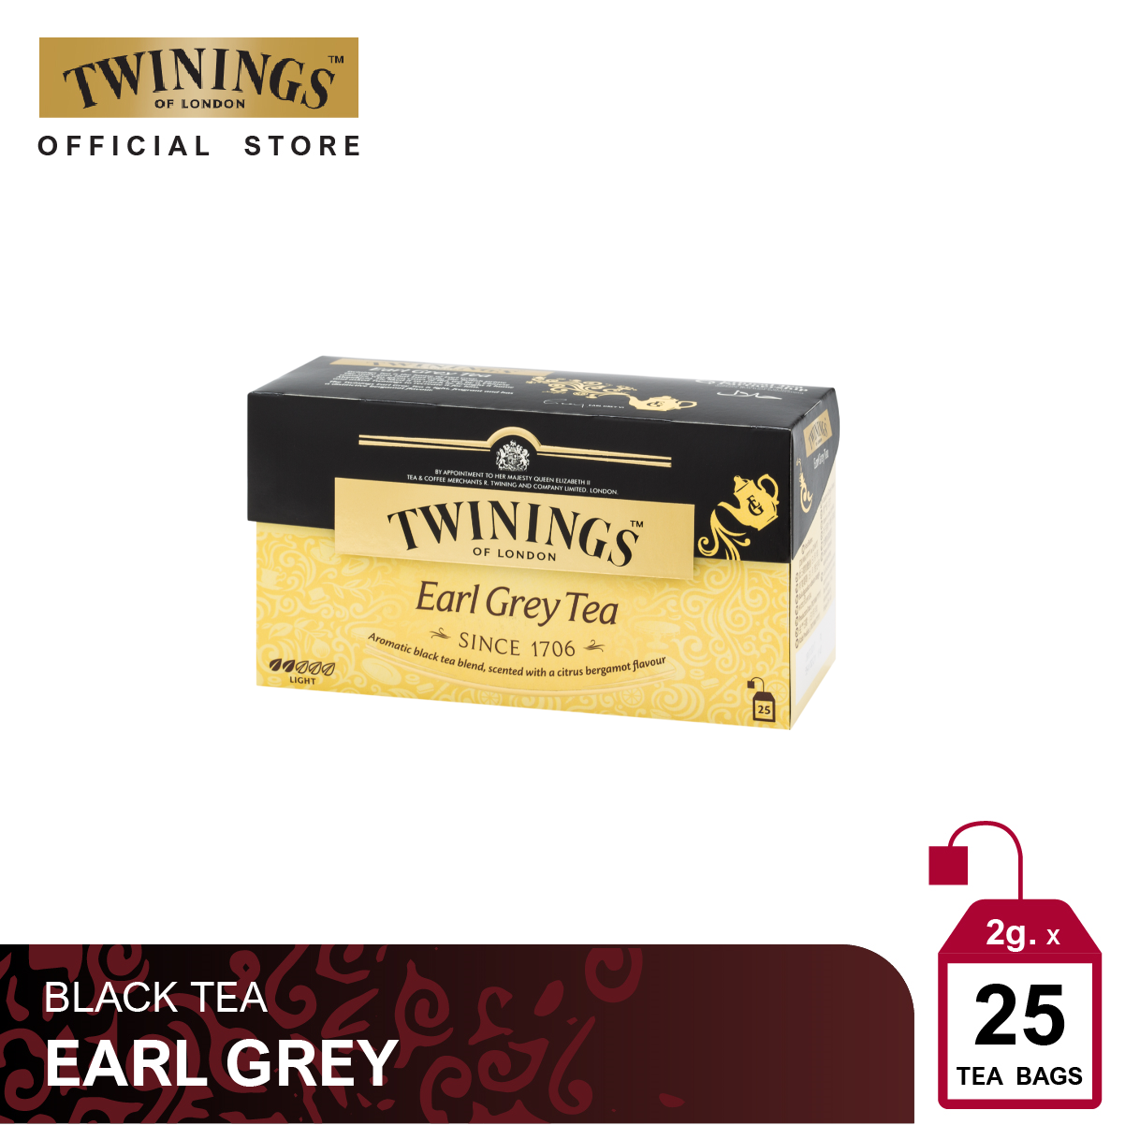 ทไวนิงส์ ชาสีทองอ่อน รสเบา เอิร์ล เกรย์ ชนิดซอง 2 กรัม แพ็ค 25 ซอง Twinings Earl Grey Tea 2 g. Pack 25 Tea Bags